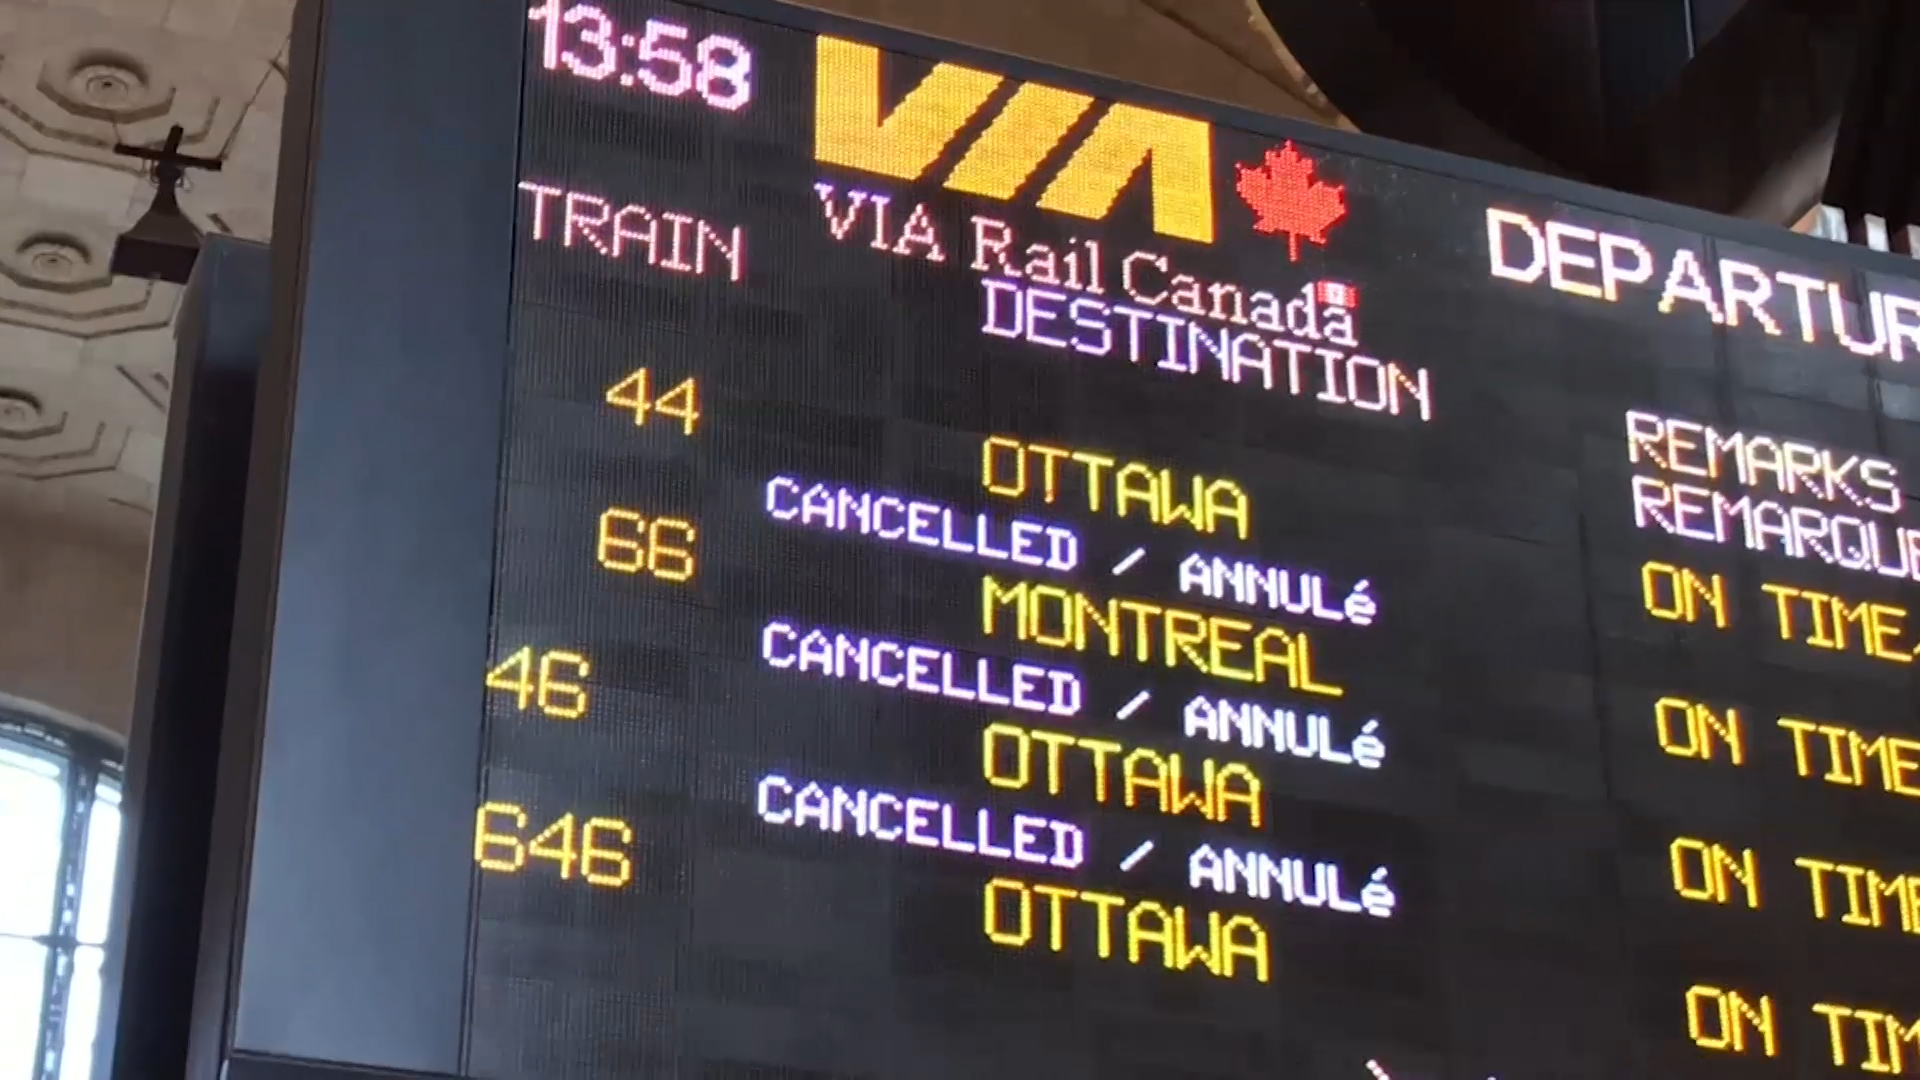 via rail trip cancellation